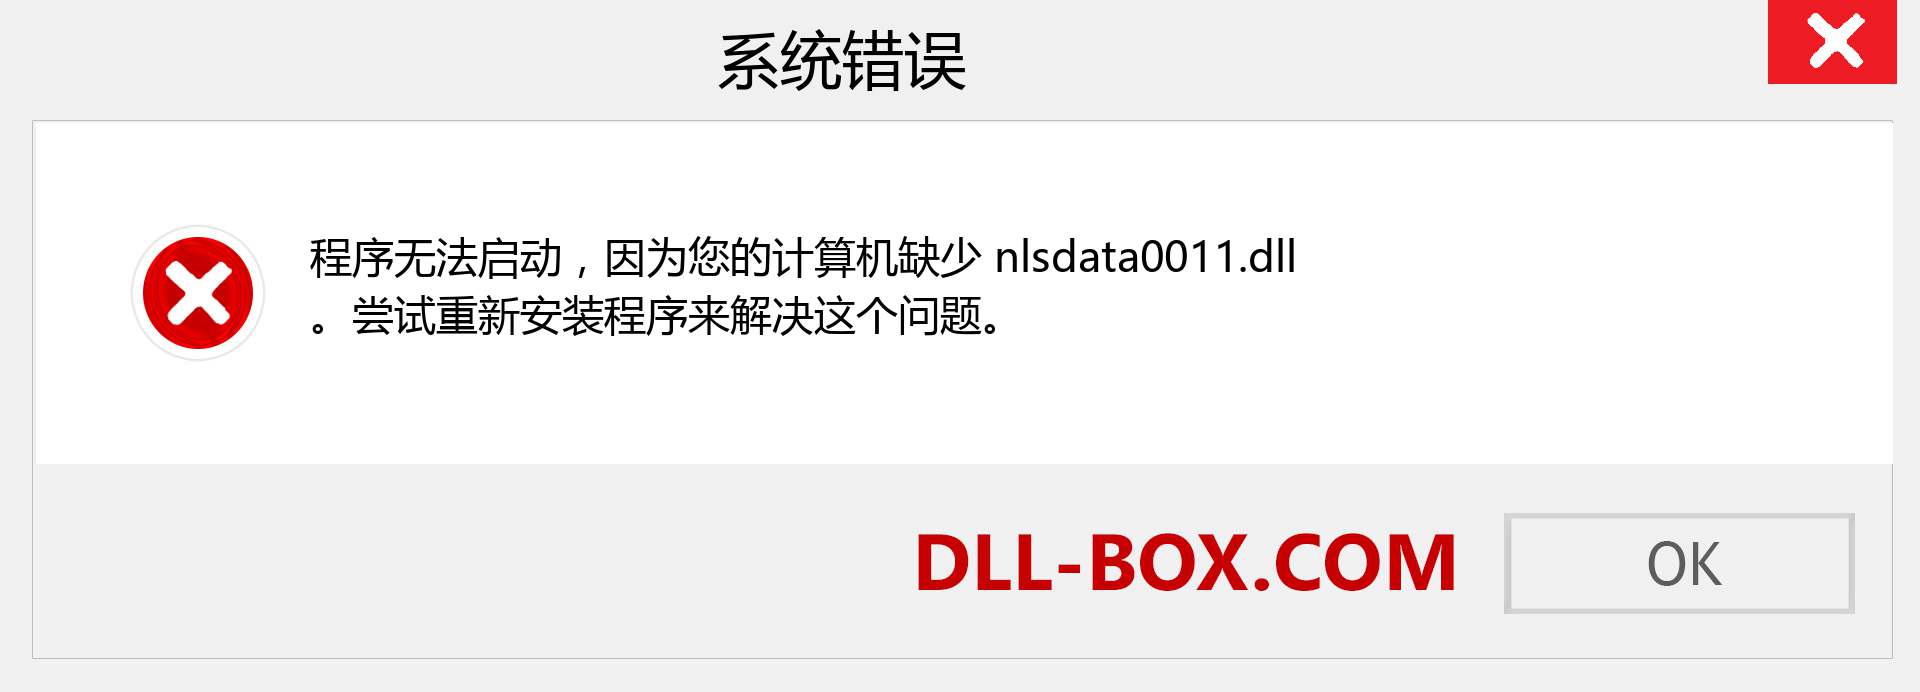 nlsdata0011.dll 文件丢失？。 适用于 Windows 7、8、10 的下载 - 修复 Windows、照片、图像上的 nlsdata0011 dll 丢失错误